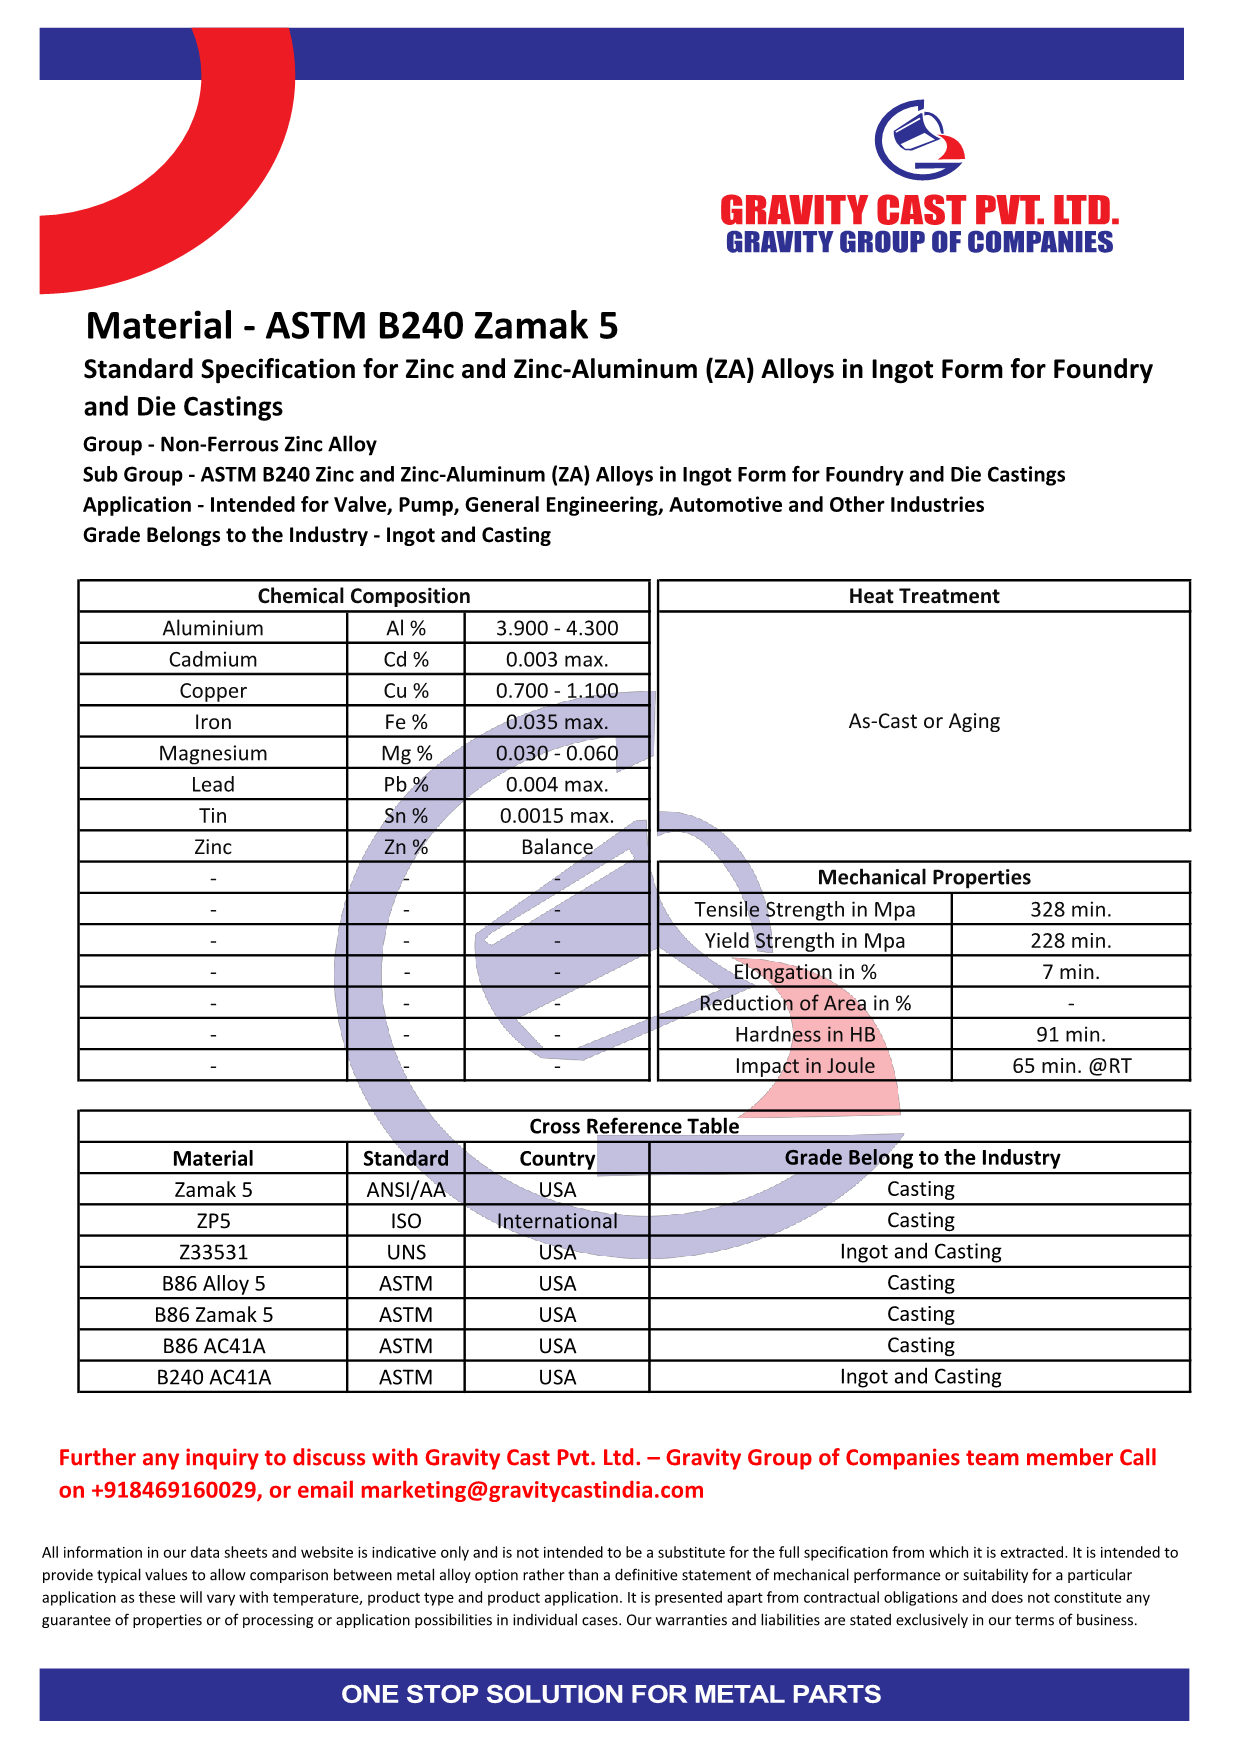 ASTM B240 Zamak 5.pdf